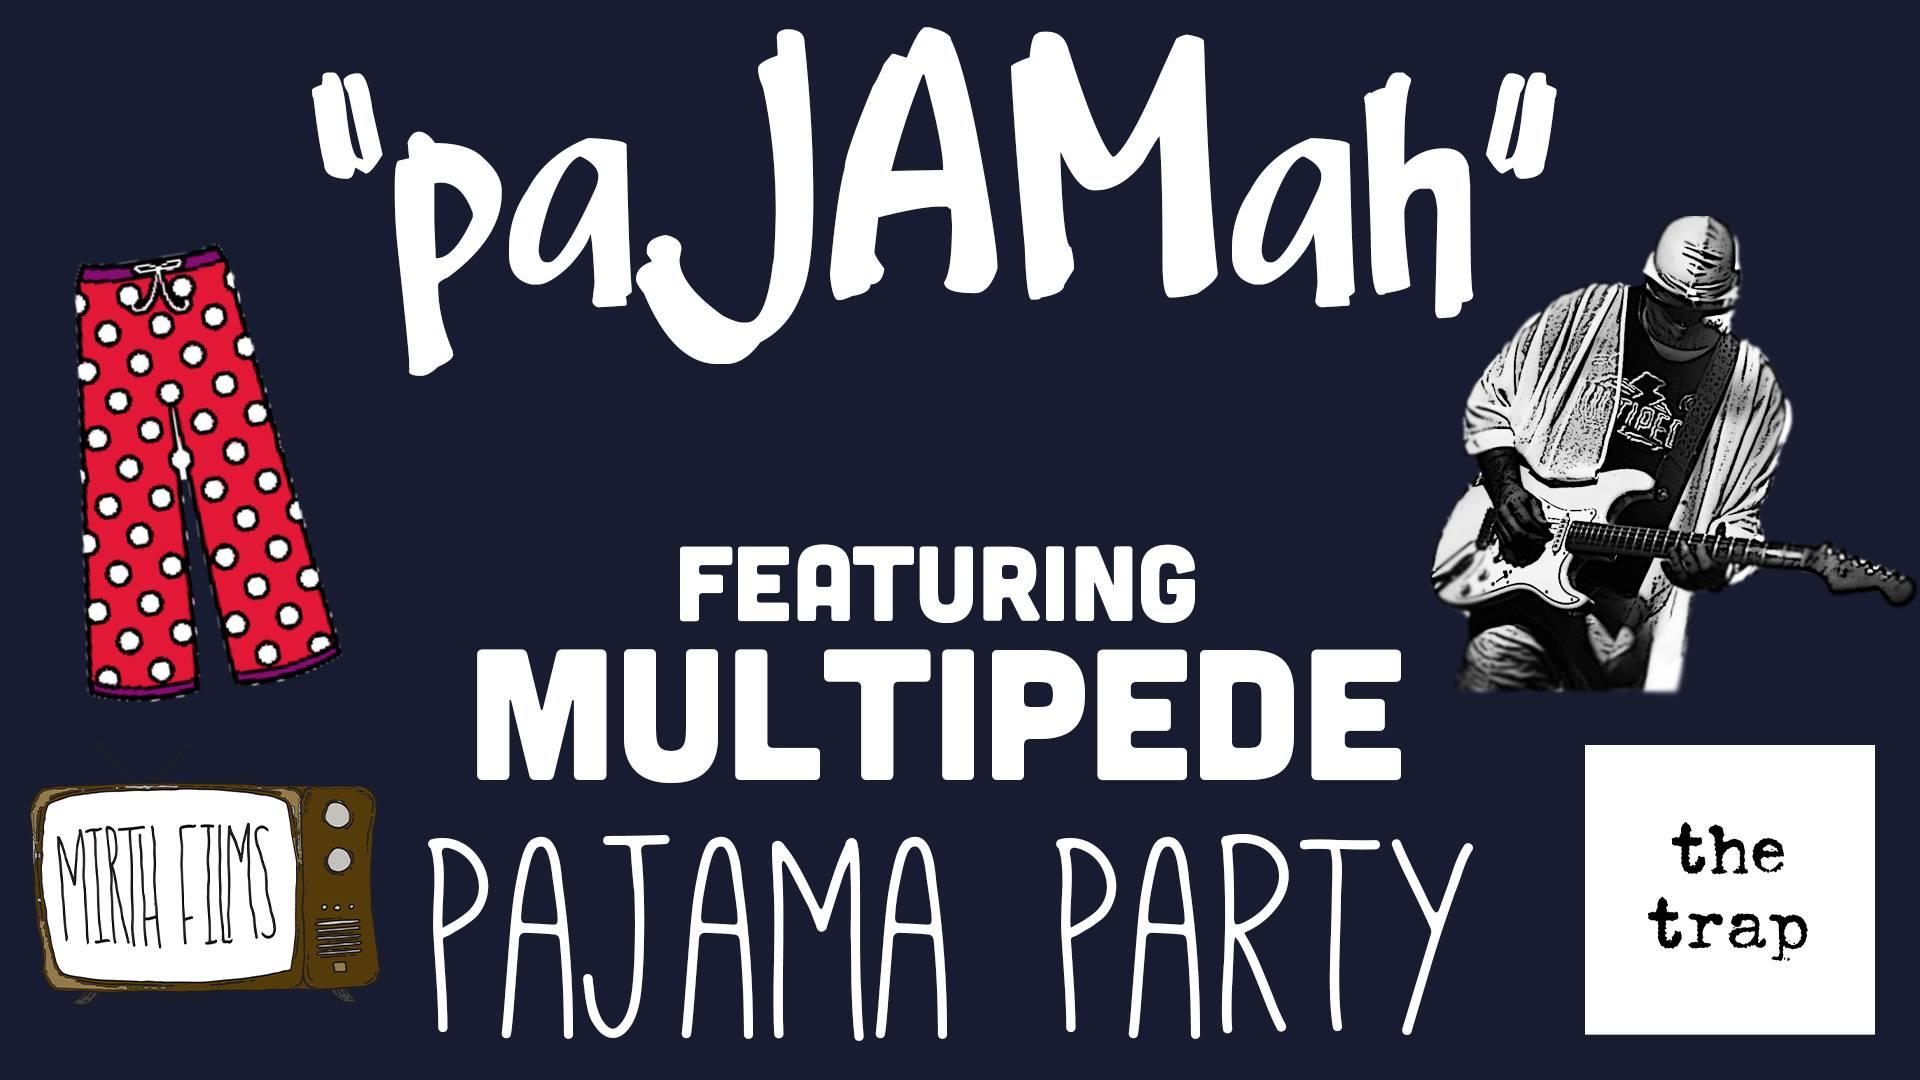 PaJAMah featuring Multipede